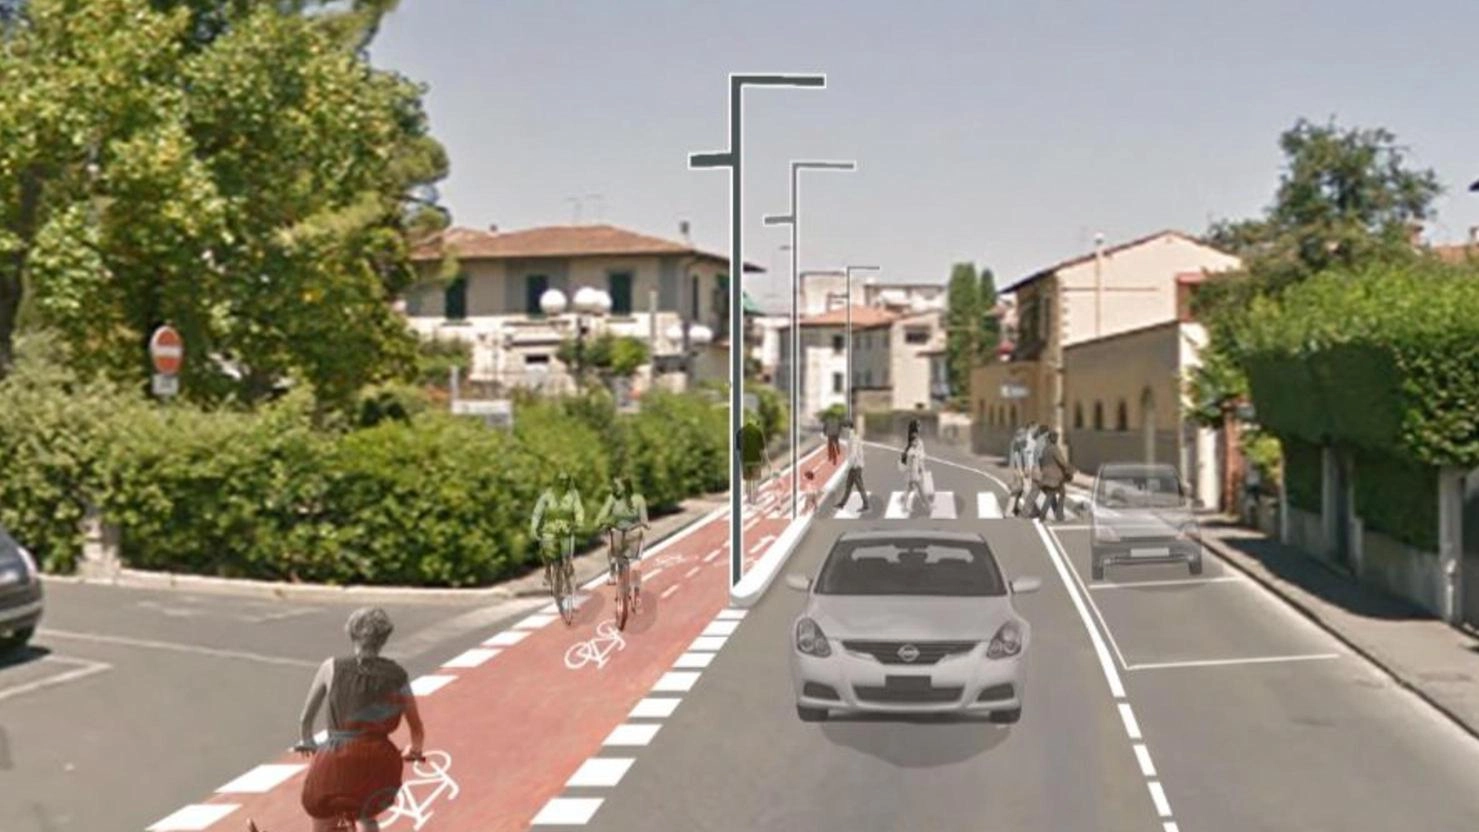 Posti auto, piste ciclabili e attraversamenti. Il nuovo volto della centralissima via Roma